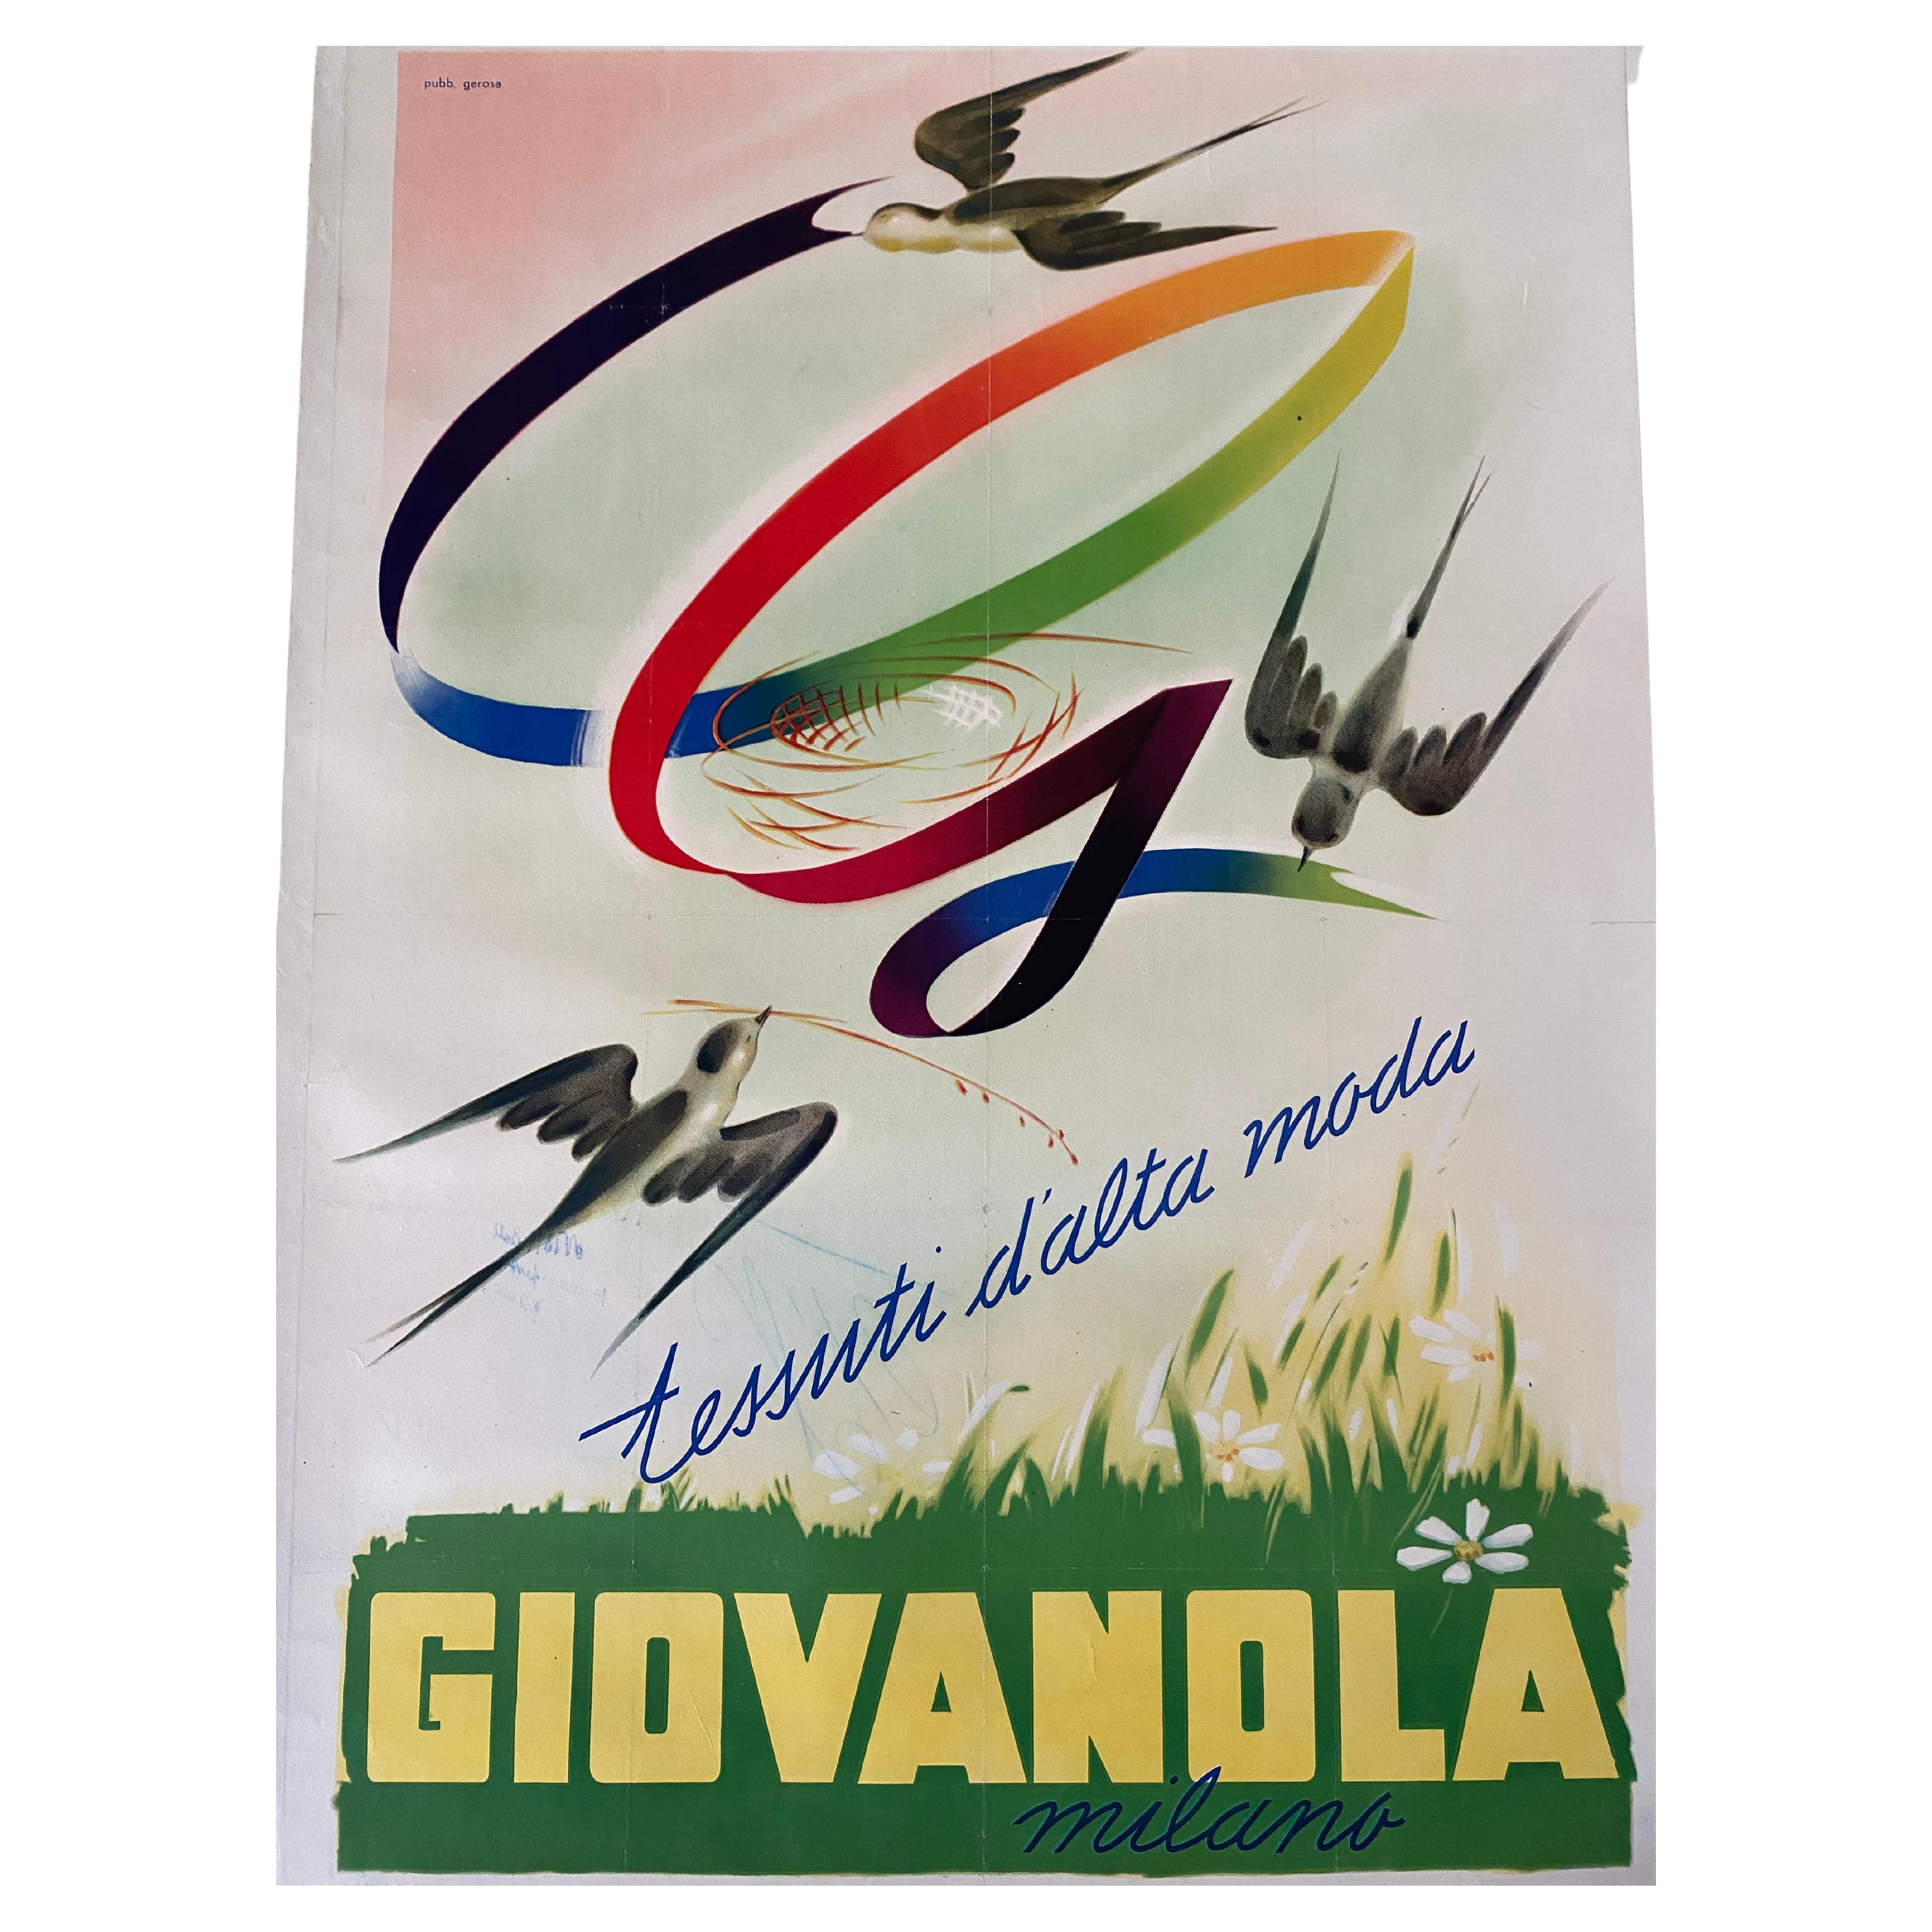 Affiche murale originale de la société textile Giovanola, Italie, années 1960